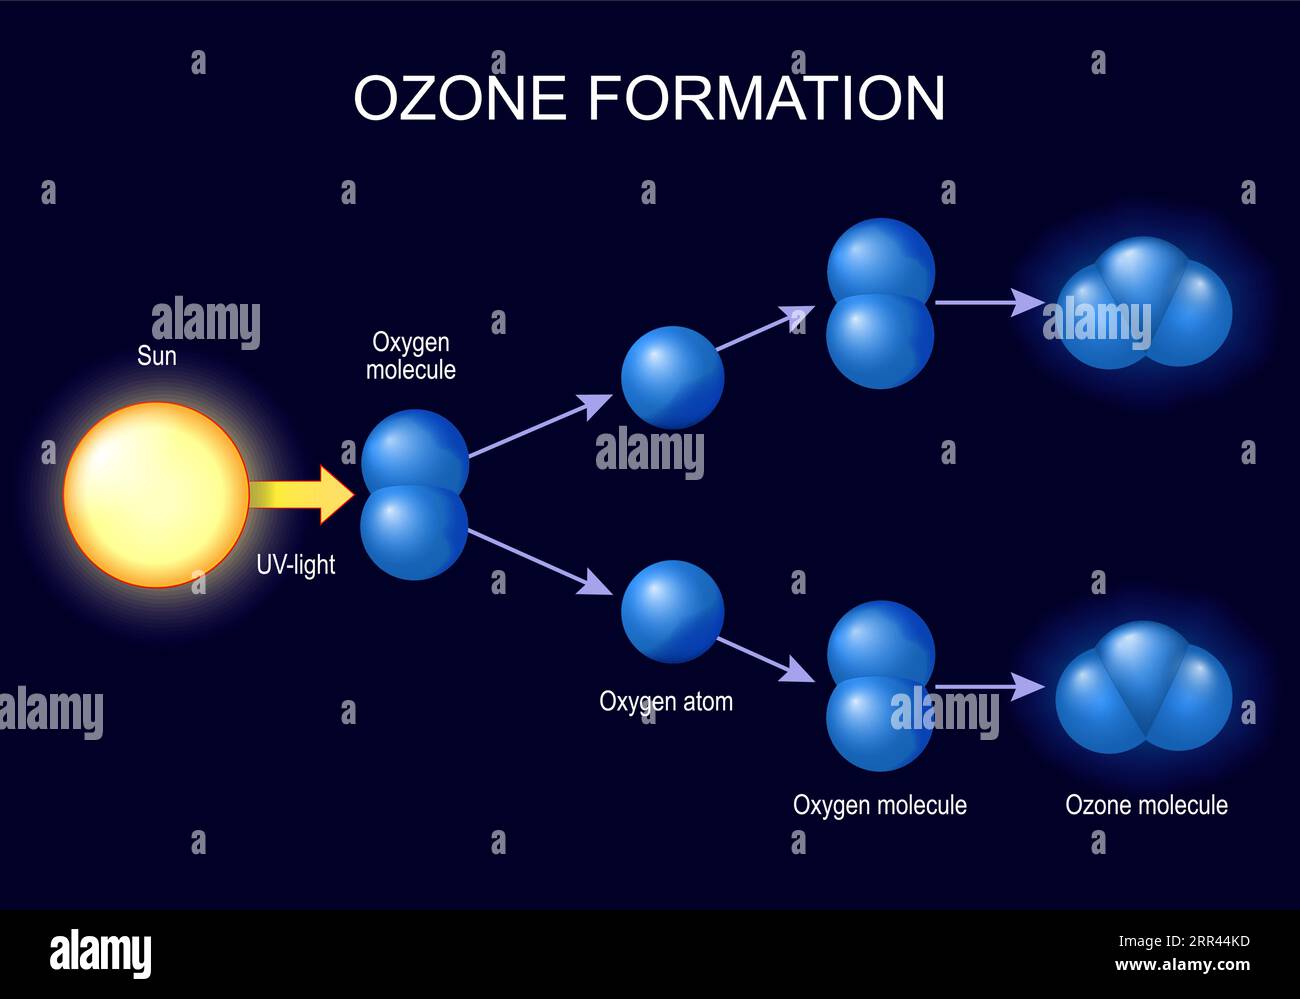 formazione di ozono. molecole ozono e atomi di ossigeno su sfondo scuro. L'ozono è una forma di ossigeno con tre atomi di ossigeno legati tra loro. illust vettoriale Illustrazione Vettoriale